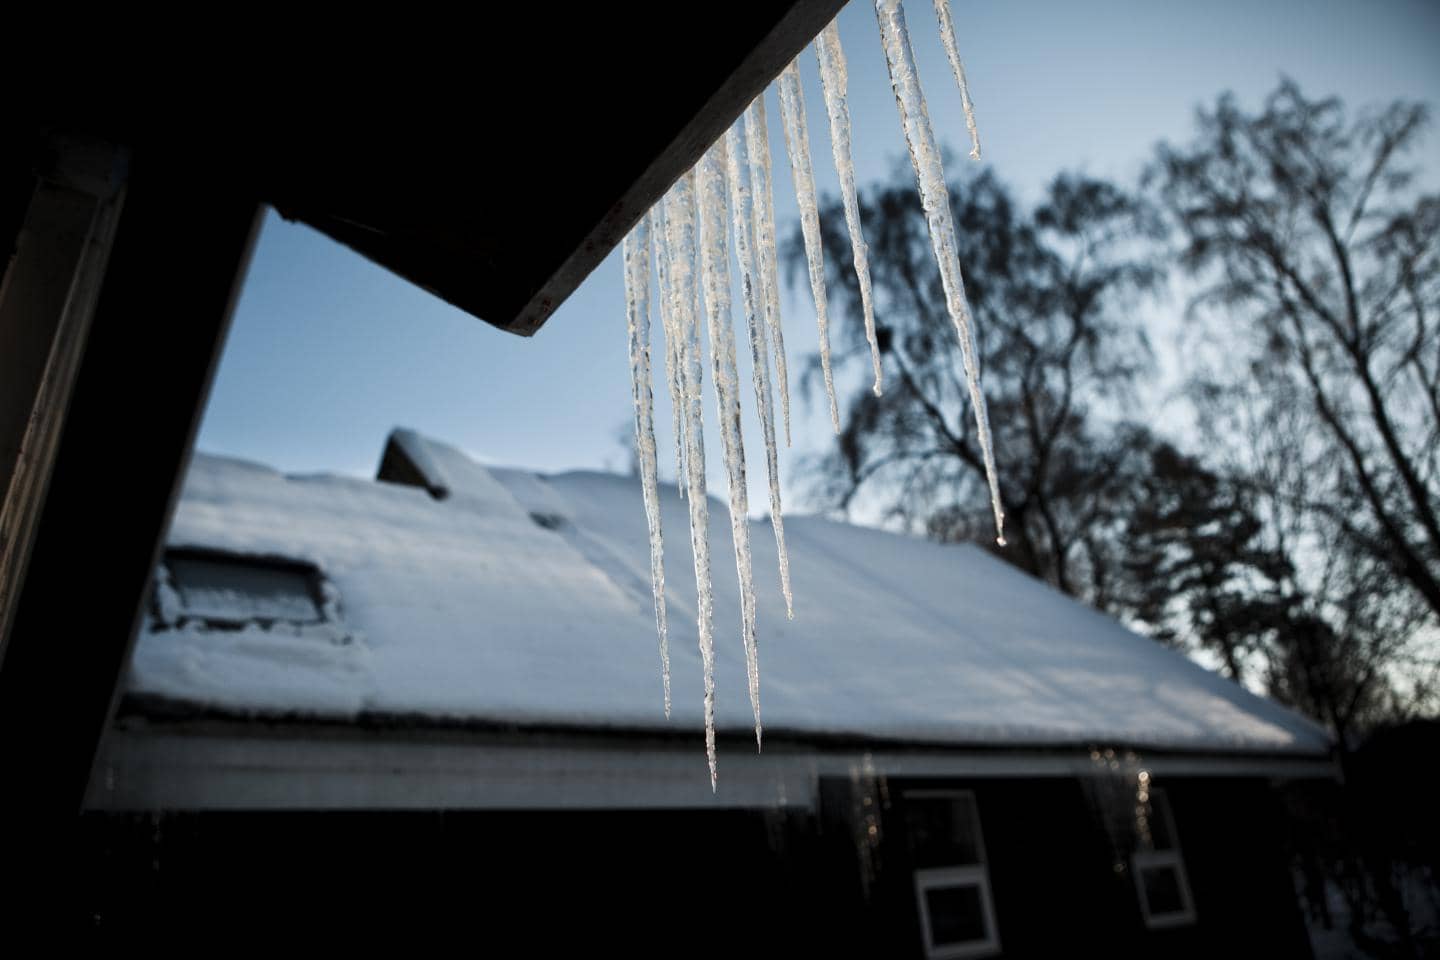 vinterklar hus - her ser du et hus der har både is og sne på taget - vi giver gode råd til at undgå frostskader og andre skader på grund af vintervejret